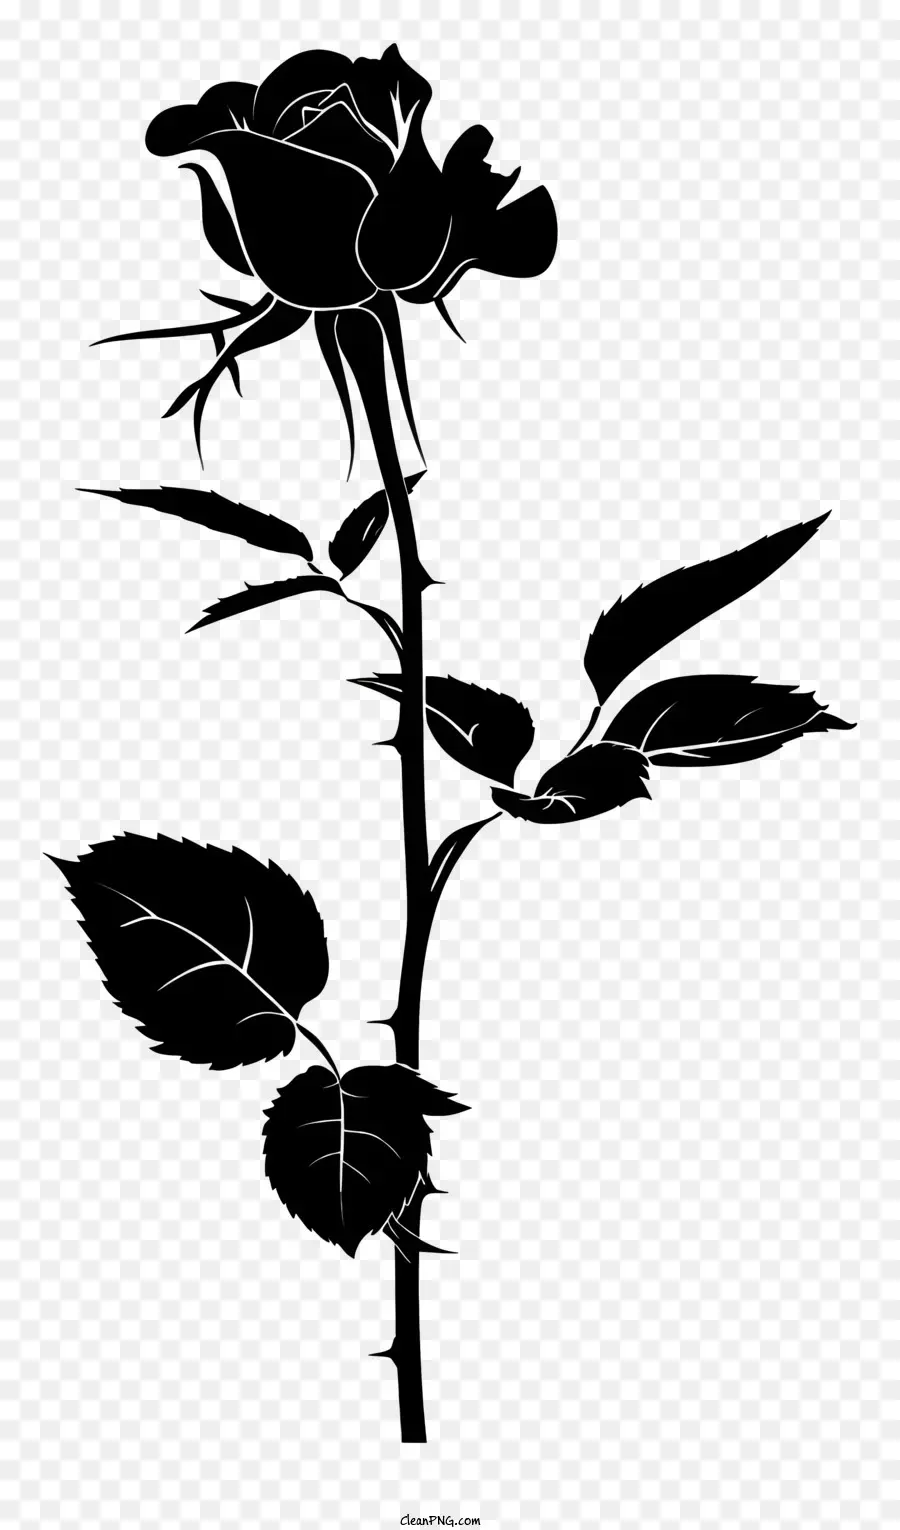 Blume silhouette - Dunkle Tinte Rose auf schwarzem Hintergrund